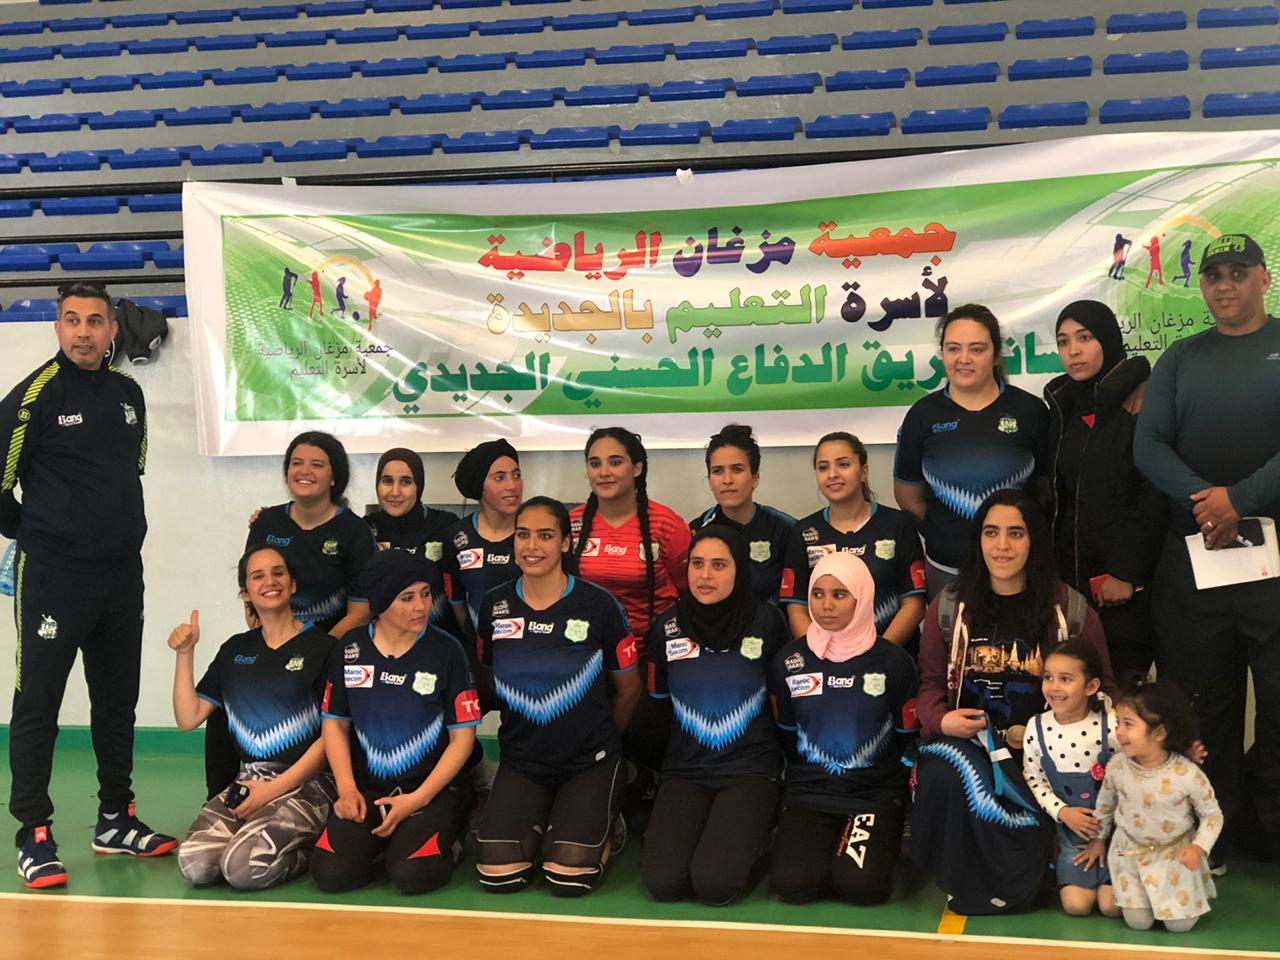 سيدات الدفاع الحسني الجديدي يحققن الفوز الثاني في بطولة القسم الثاني لكرة اليد 